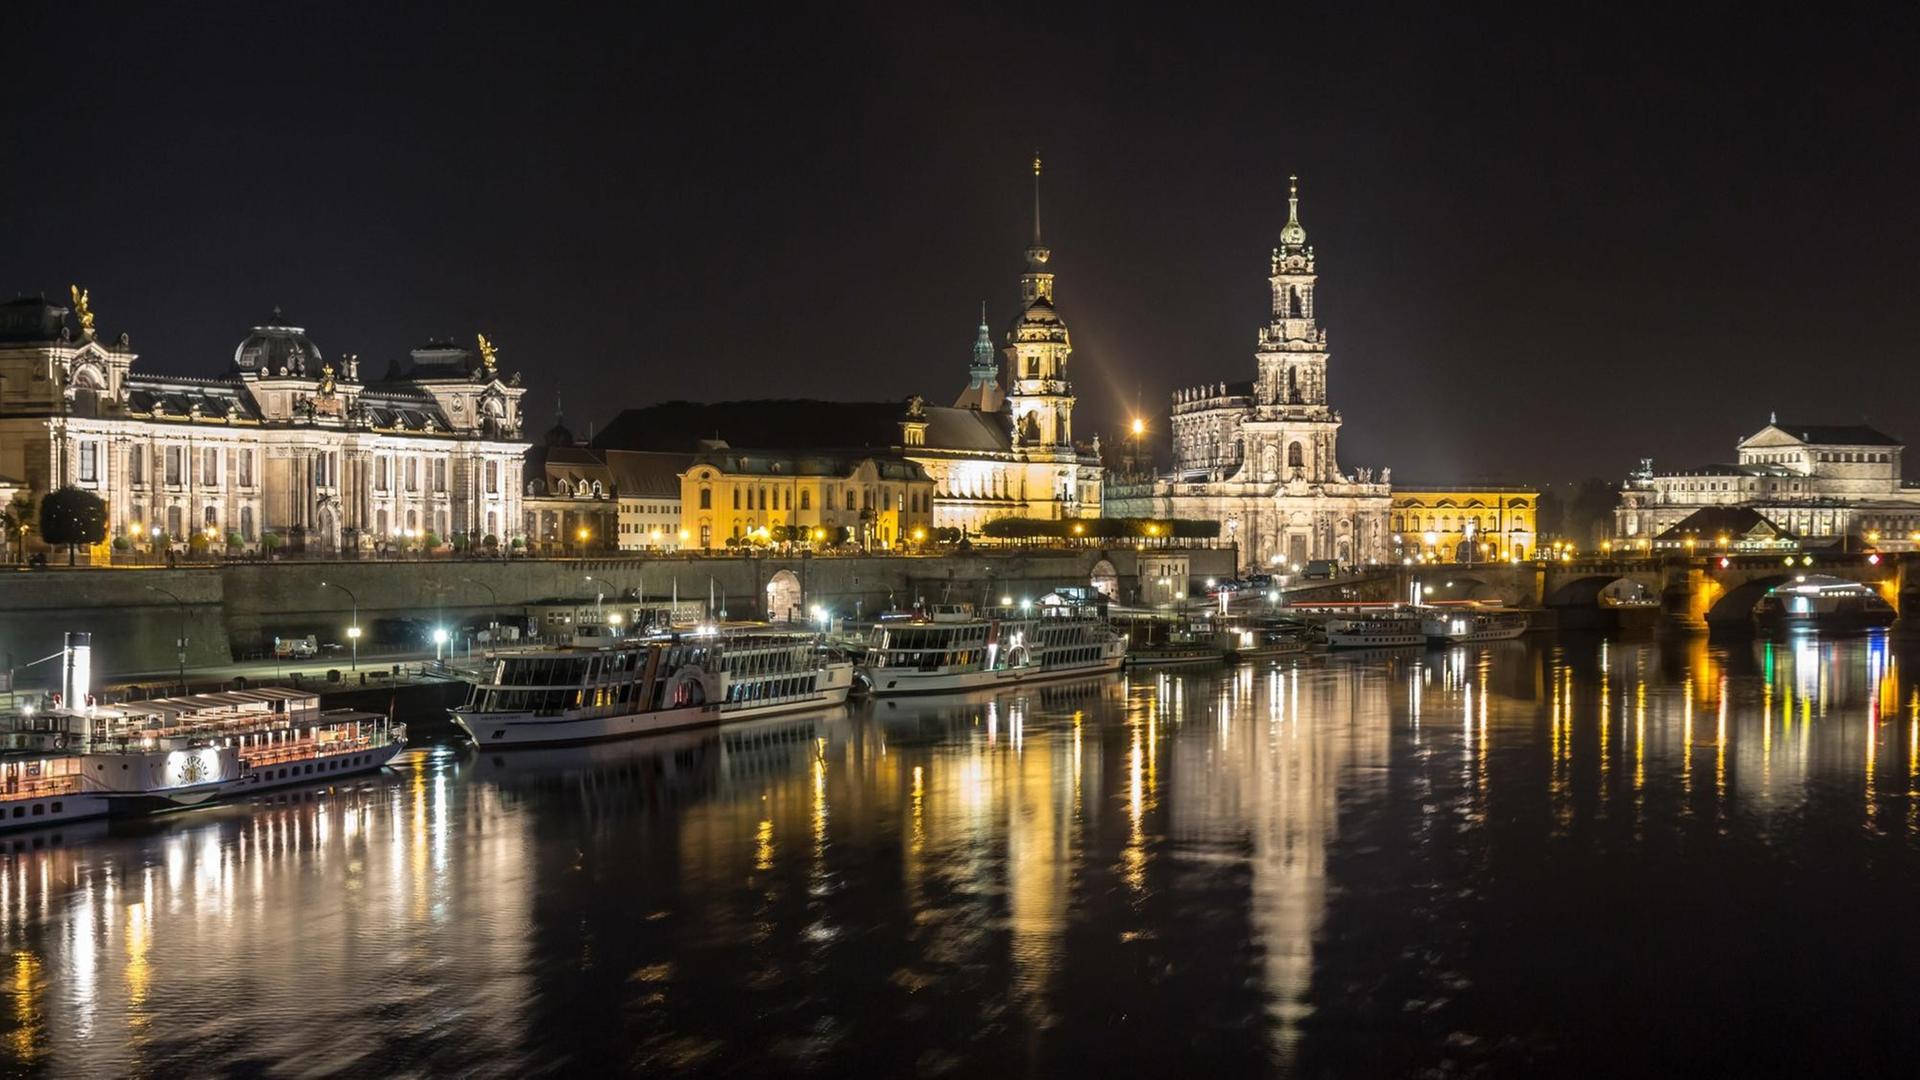 Elbpanorama der historischen Altstadt Dresdens bei Nacht